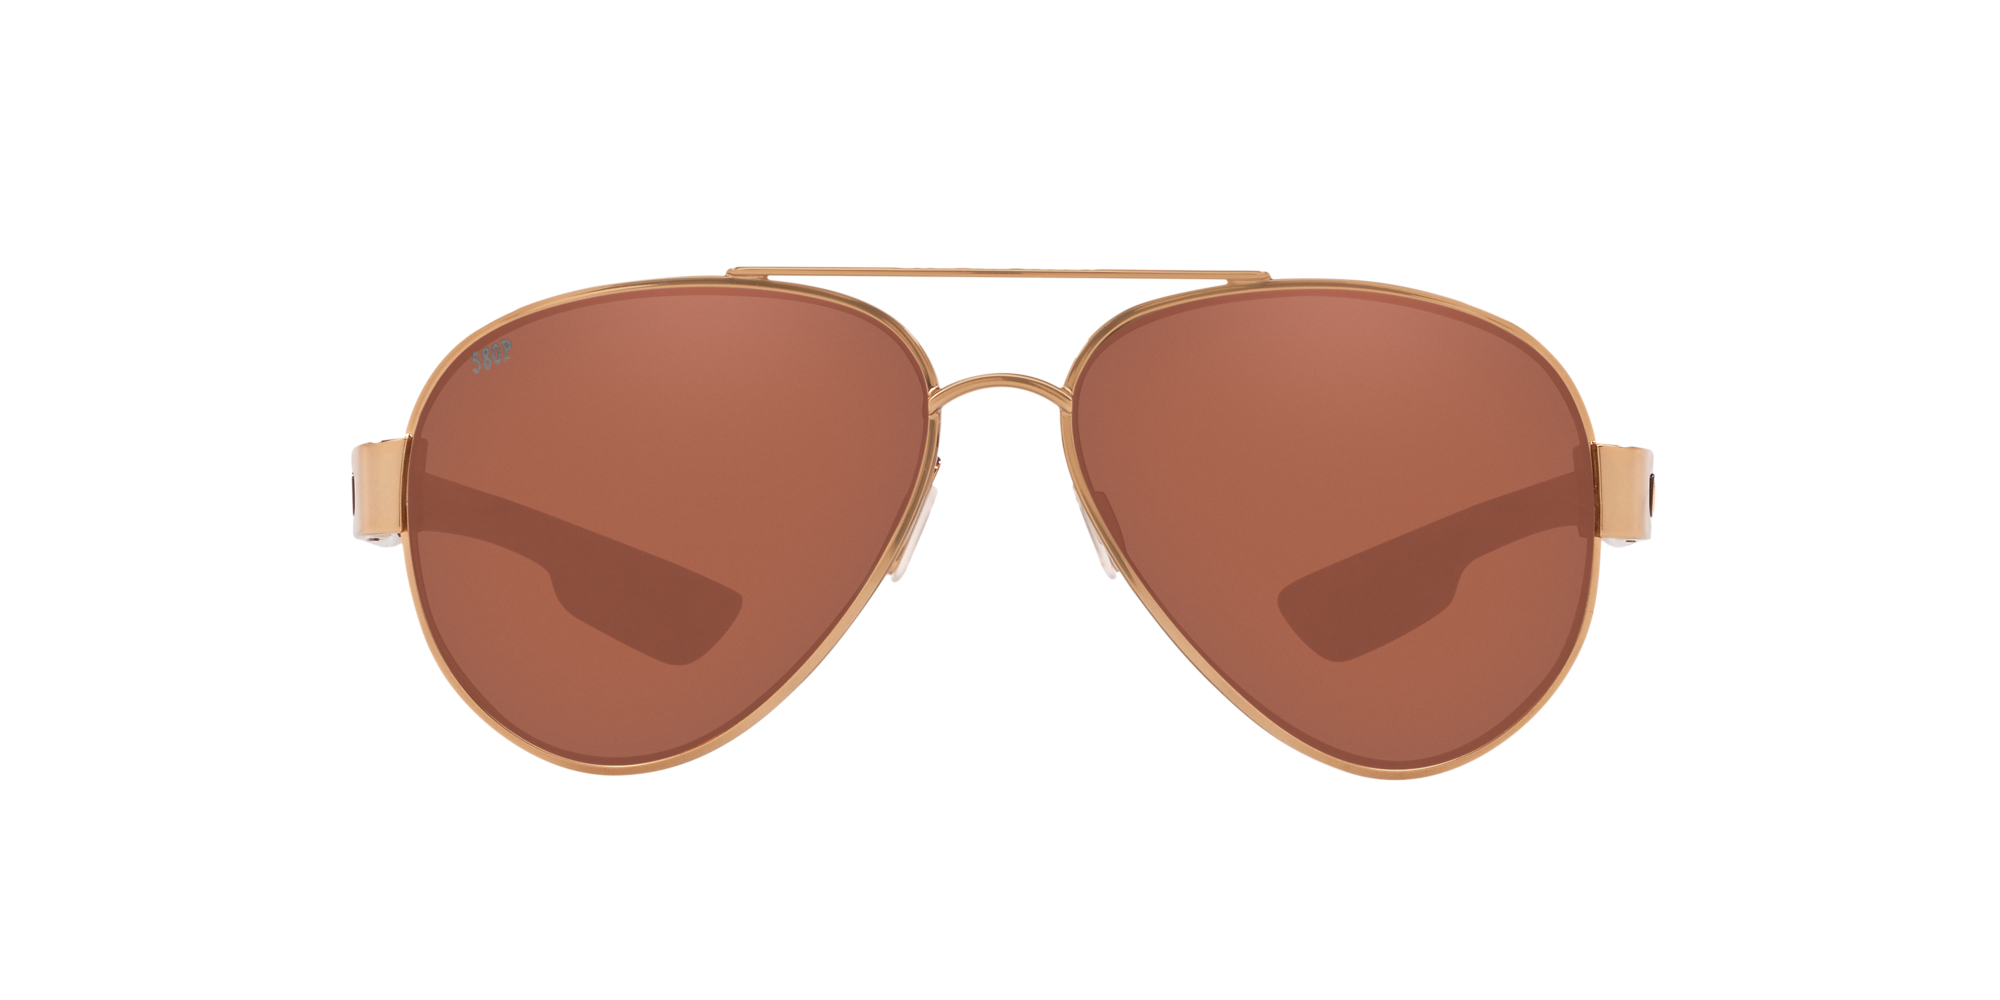 South Point Polarized Sunglasses in Copper | Costa Del Mar®